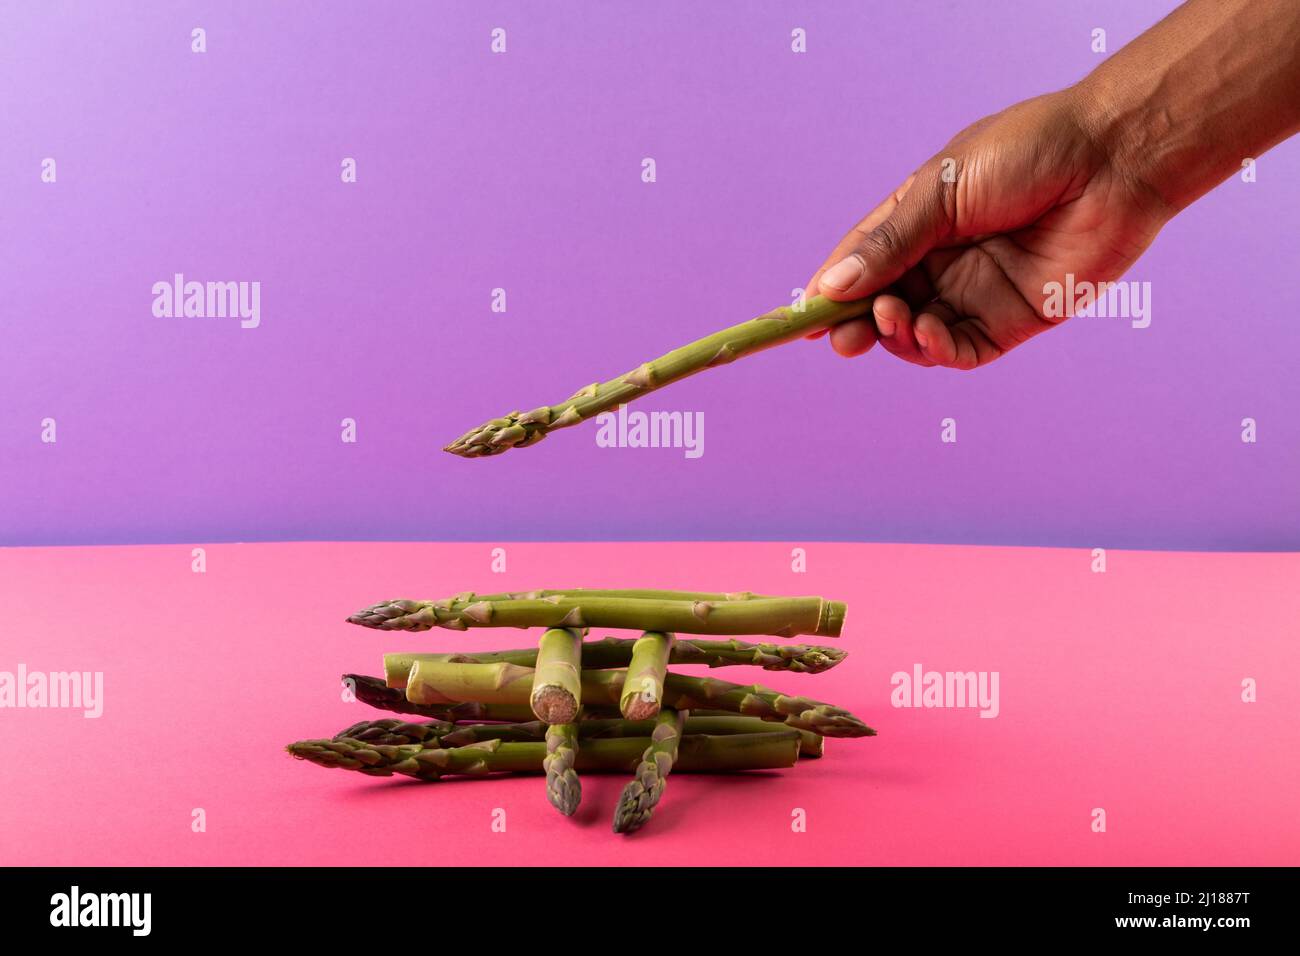 Asparagi tagliati a mano su sfondo a due toni con spazio di copia Foto Stock